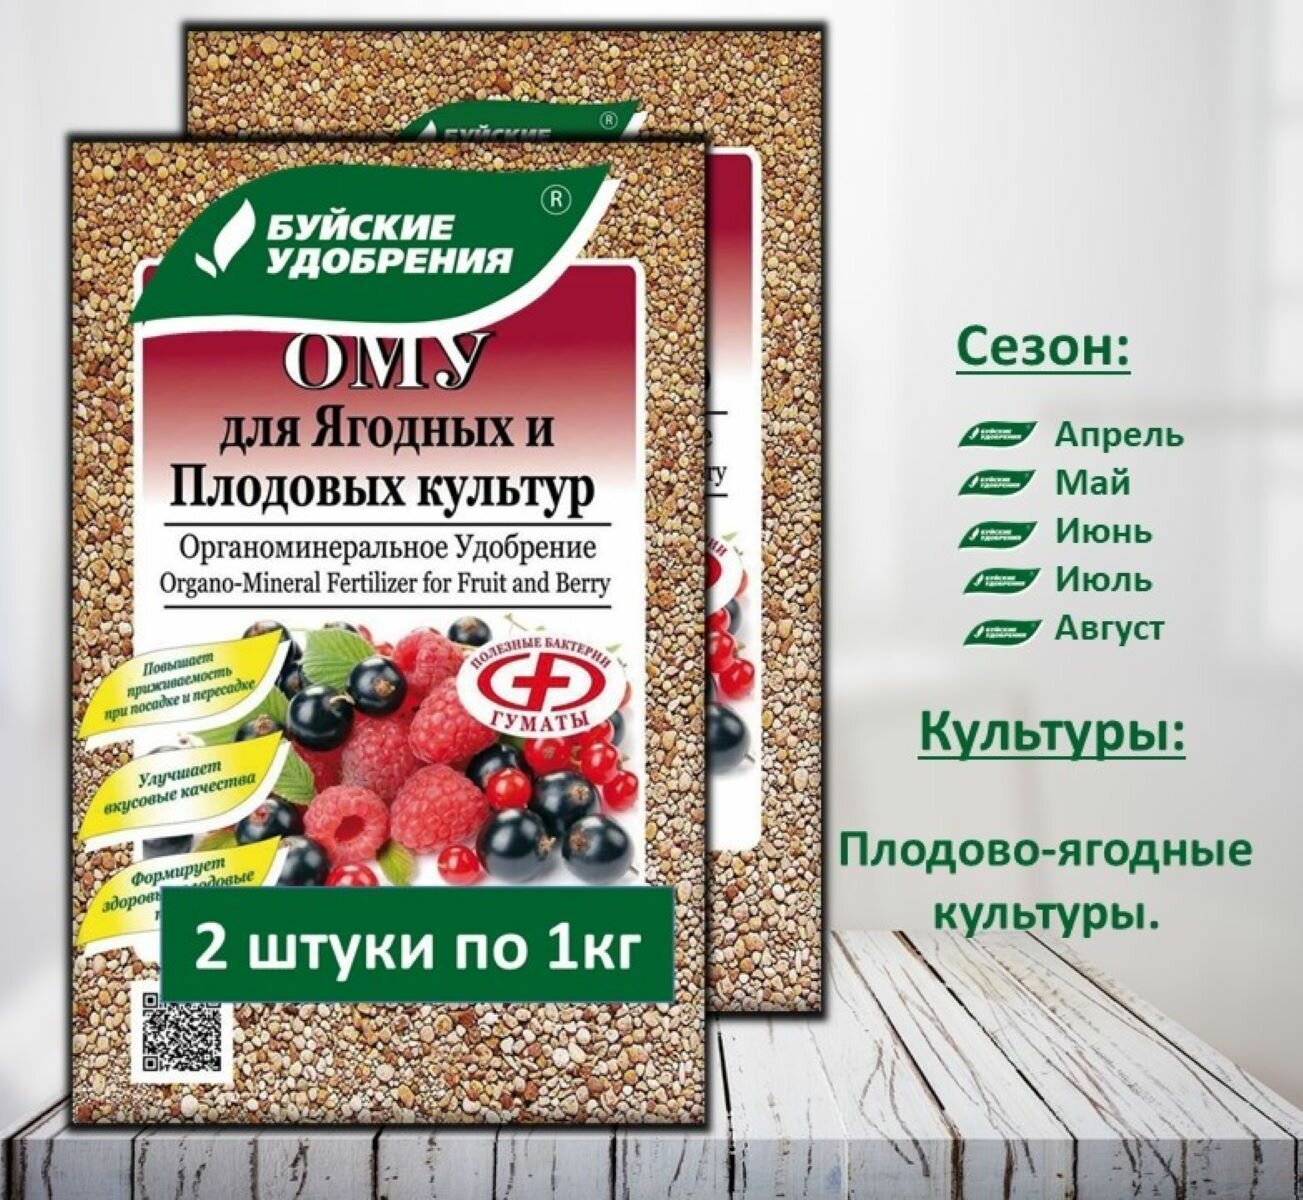 ОМУ "Для Ягодных и Плодовых культур" 2 упаковка по 1 кг.